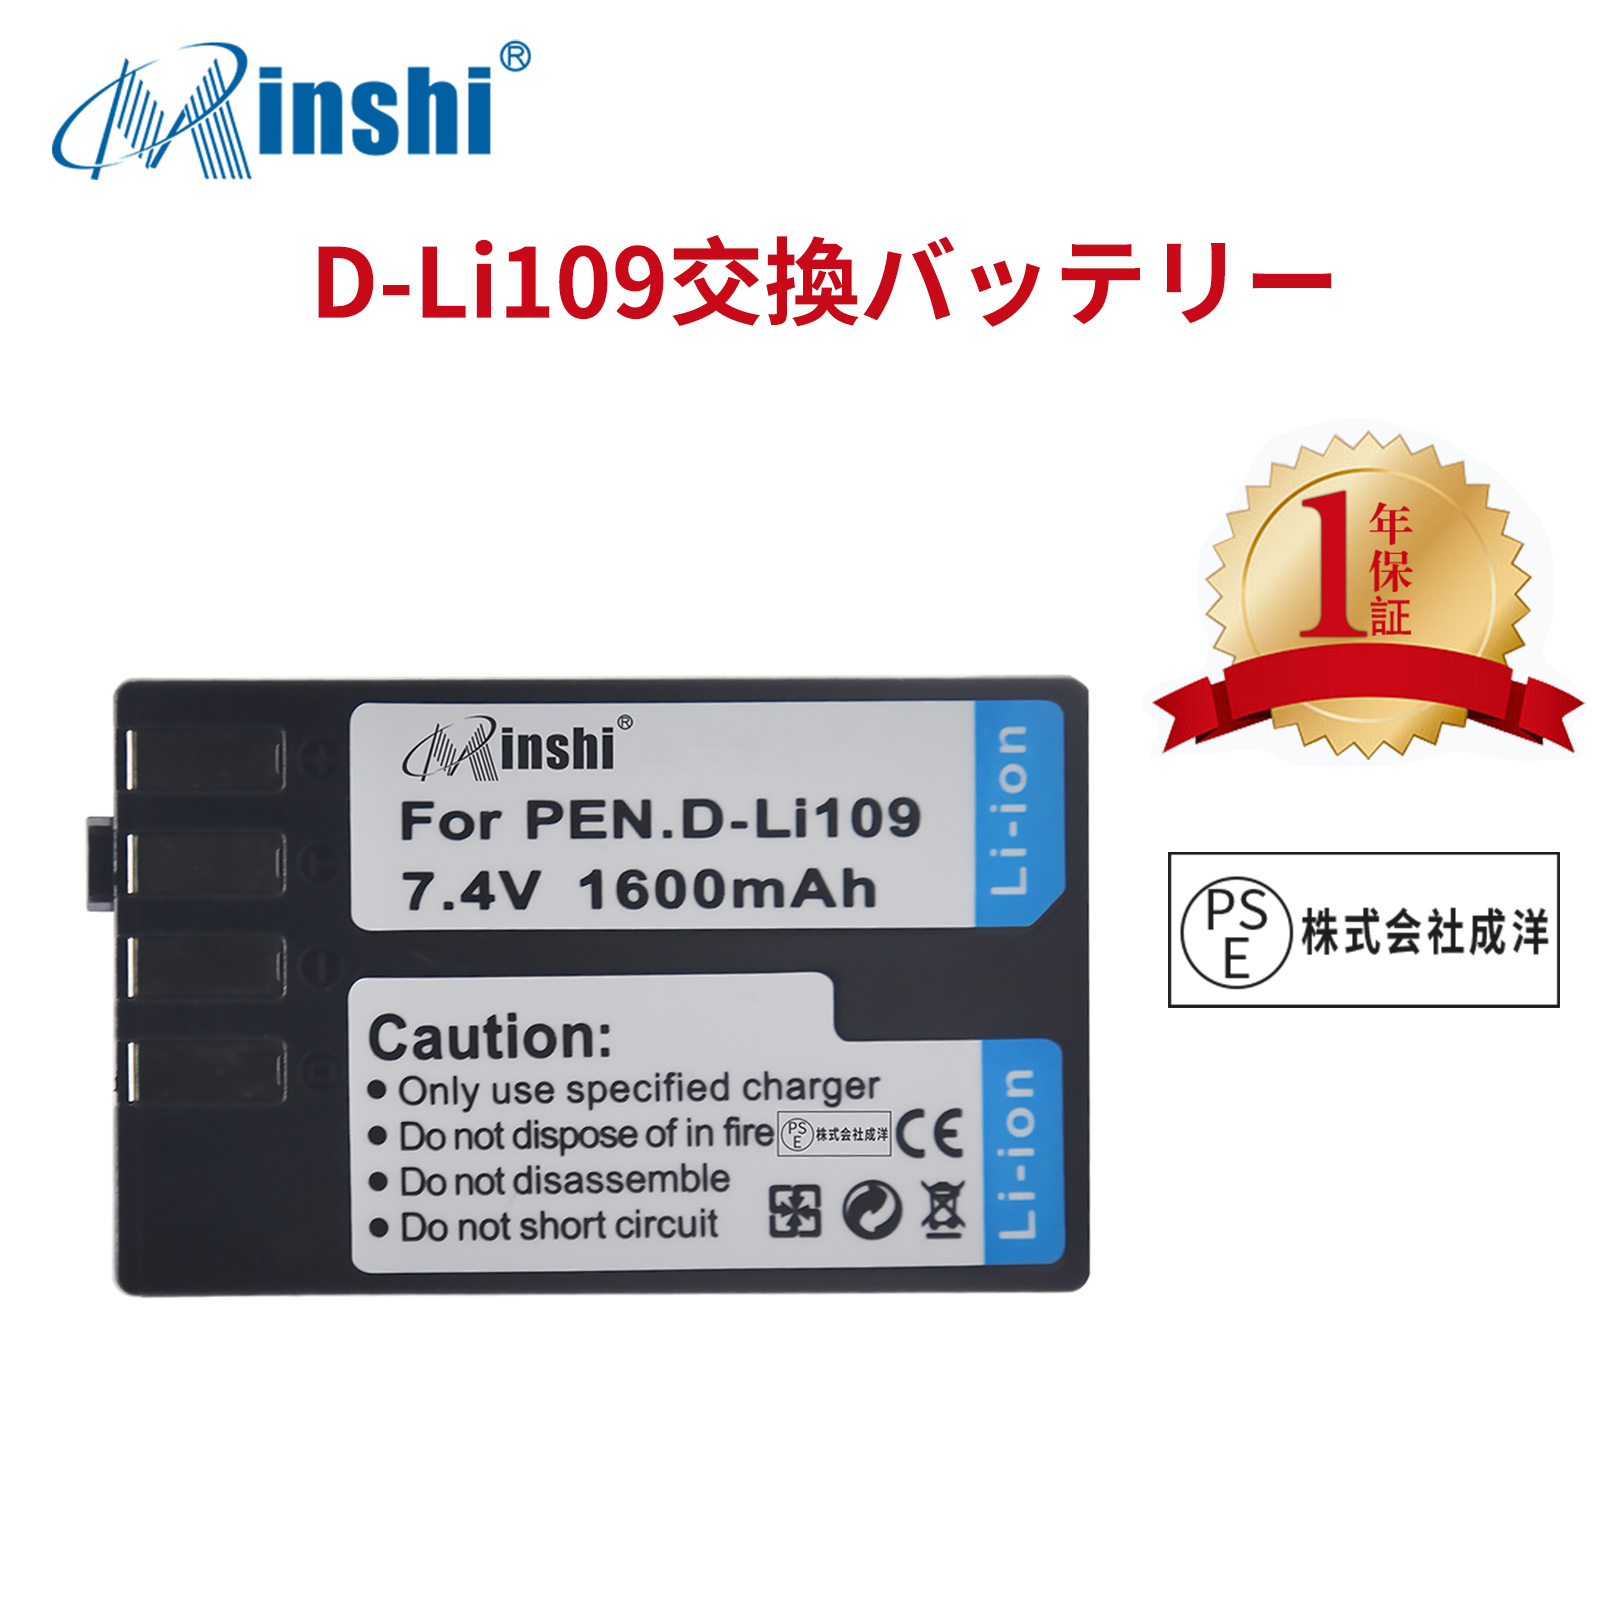 【1年保証】minshi Canon K-S1   【1600mAh 7.4V】K-r K-30 K-70 PSE認定済 高品質 D-LI109互換バッテリー